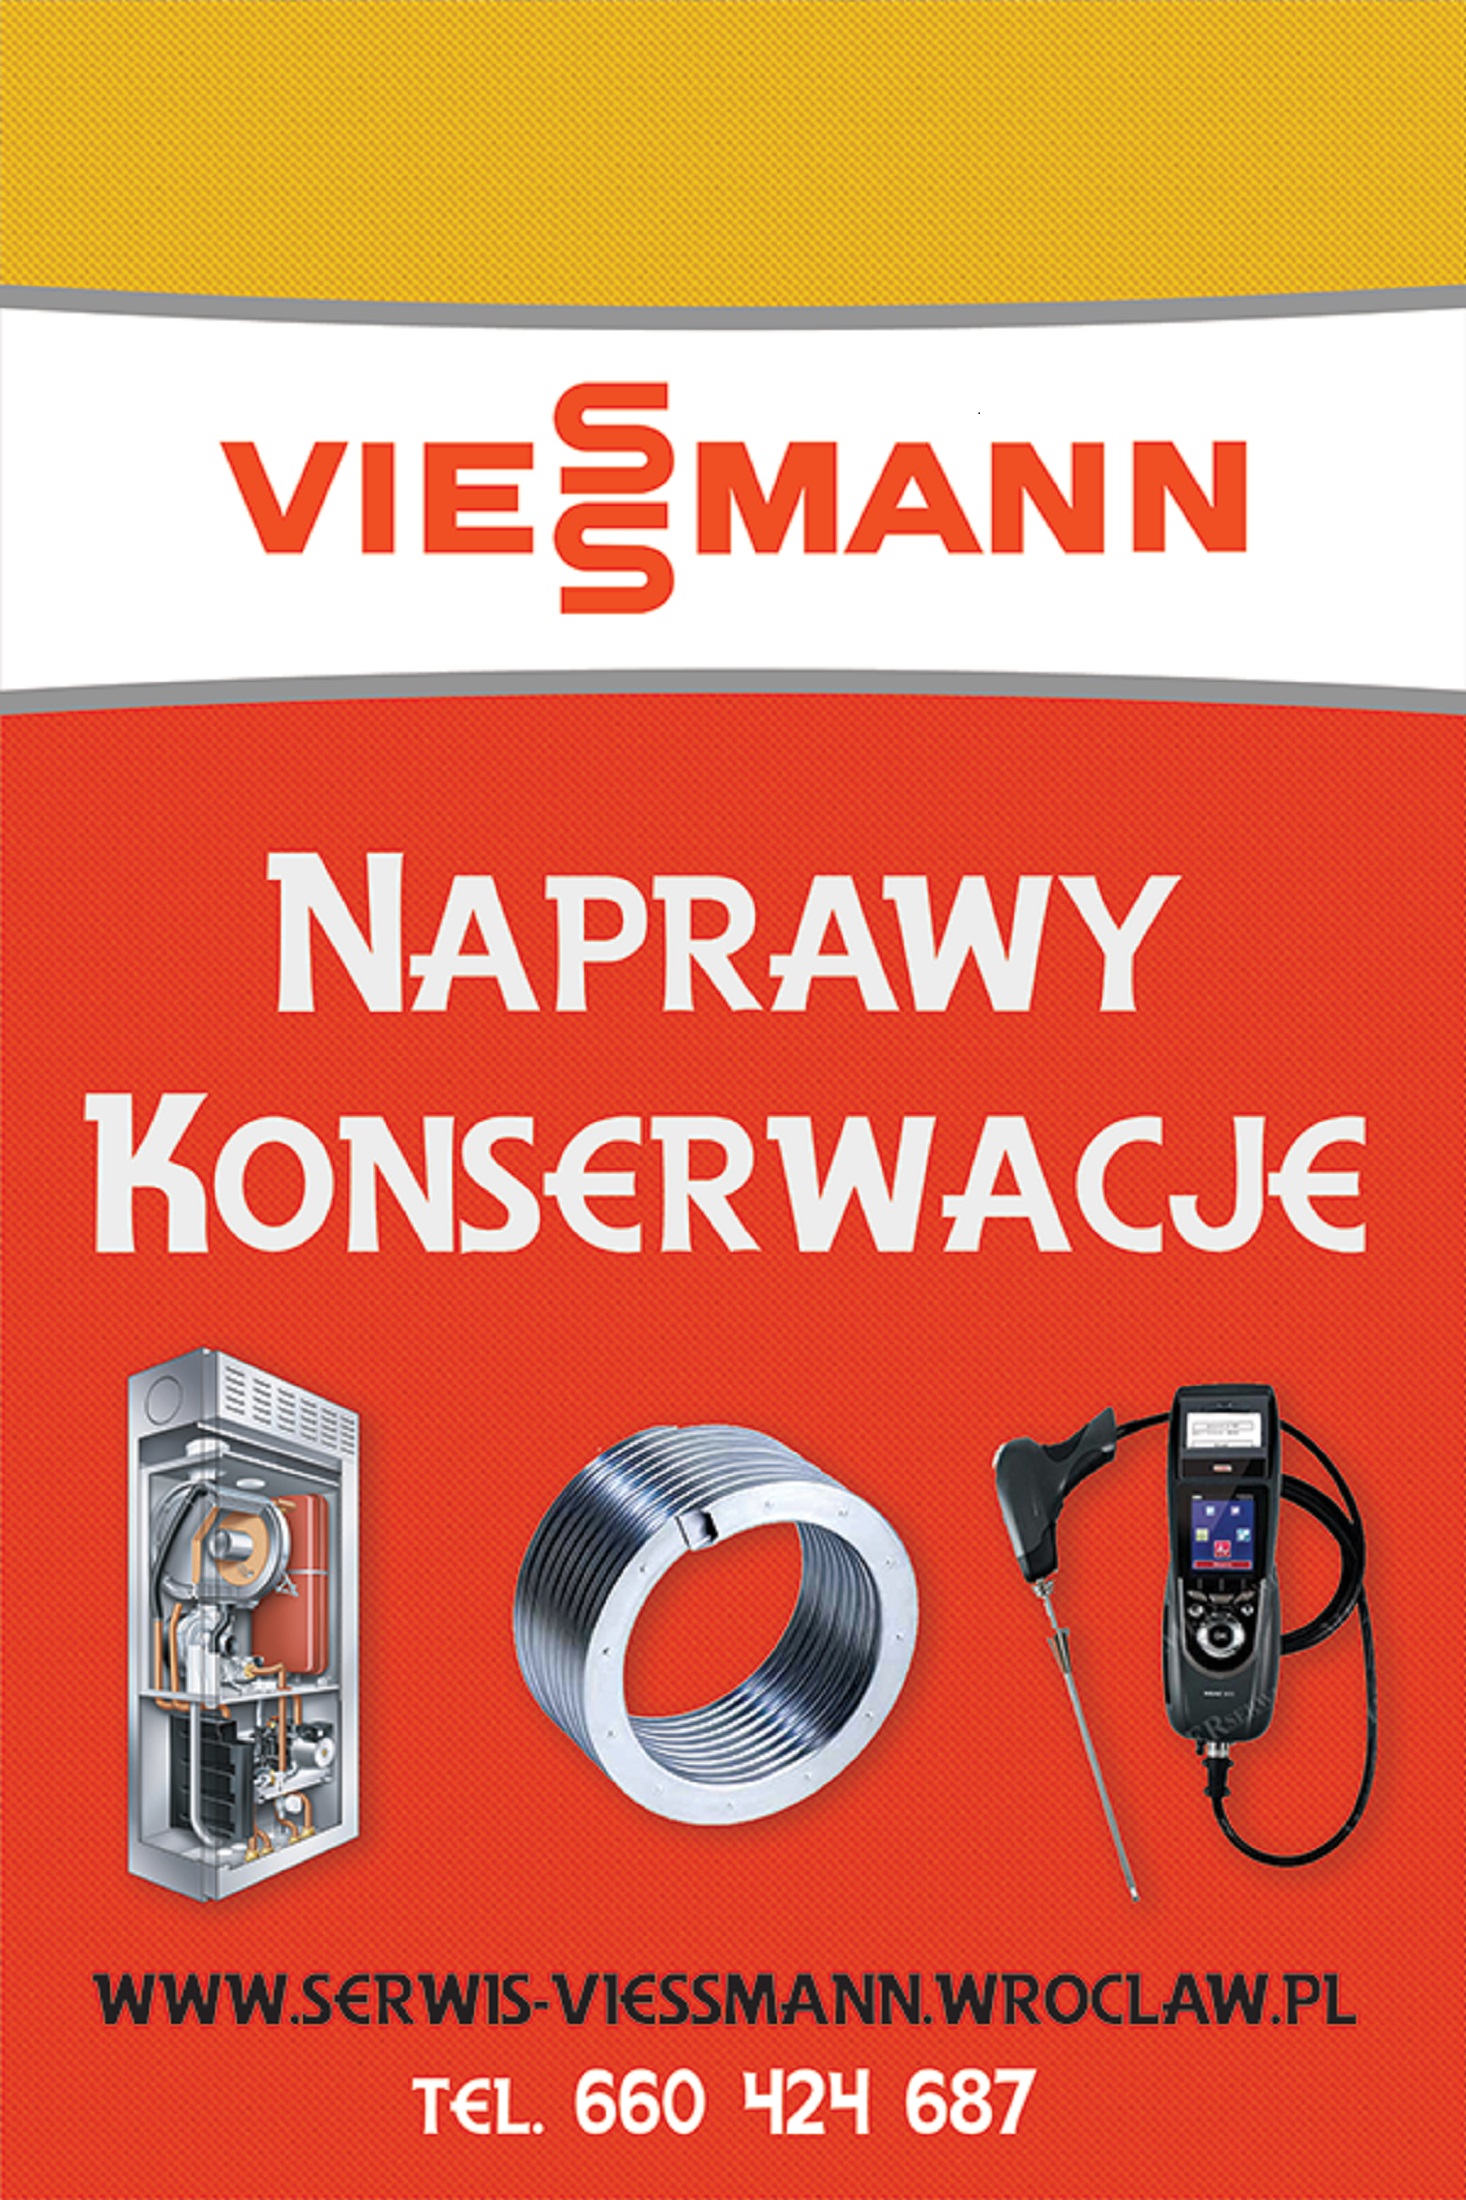 Serwis Viessmann Wrocław Kontakt